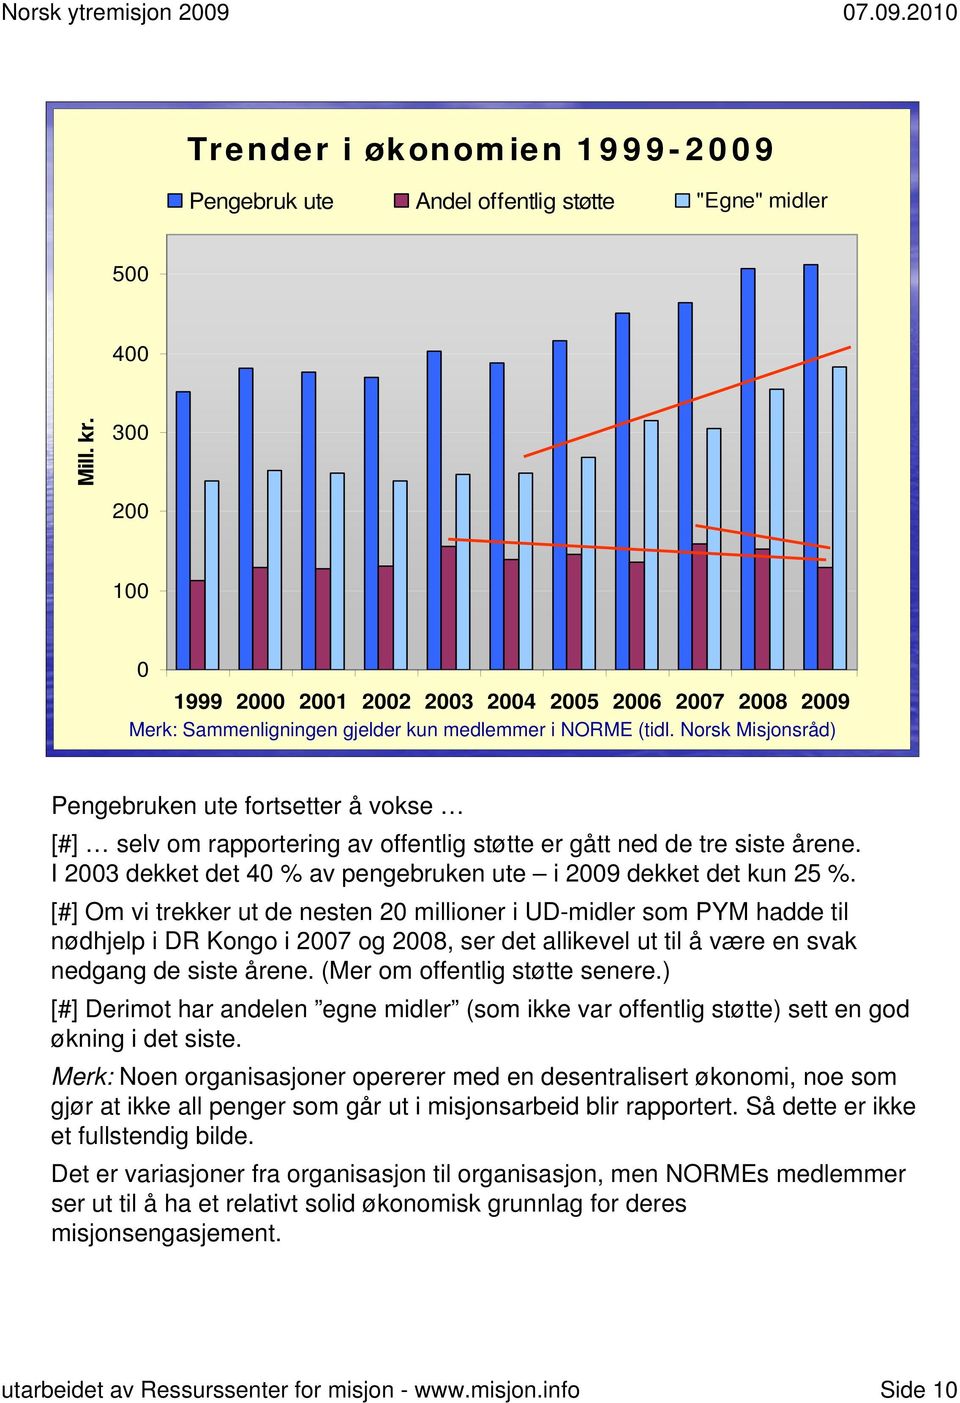 Norsk Misjonsråd) Pengebruken ute fortsetter å vokse [#] selv om rapportering av offentlig støtte er gått ned de tre siste årene. I 2003 dekket det 40 % av pengebruken ute i 2009 dekket det kun 25 %.